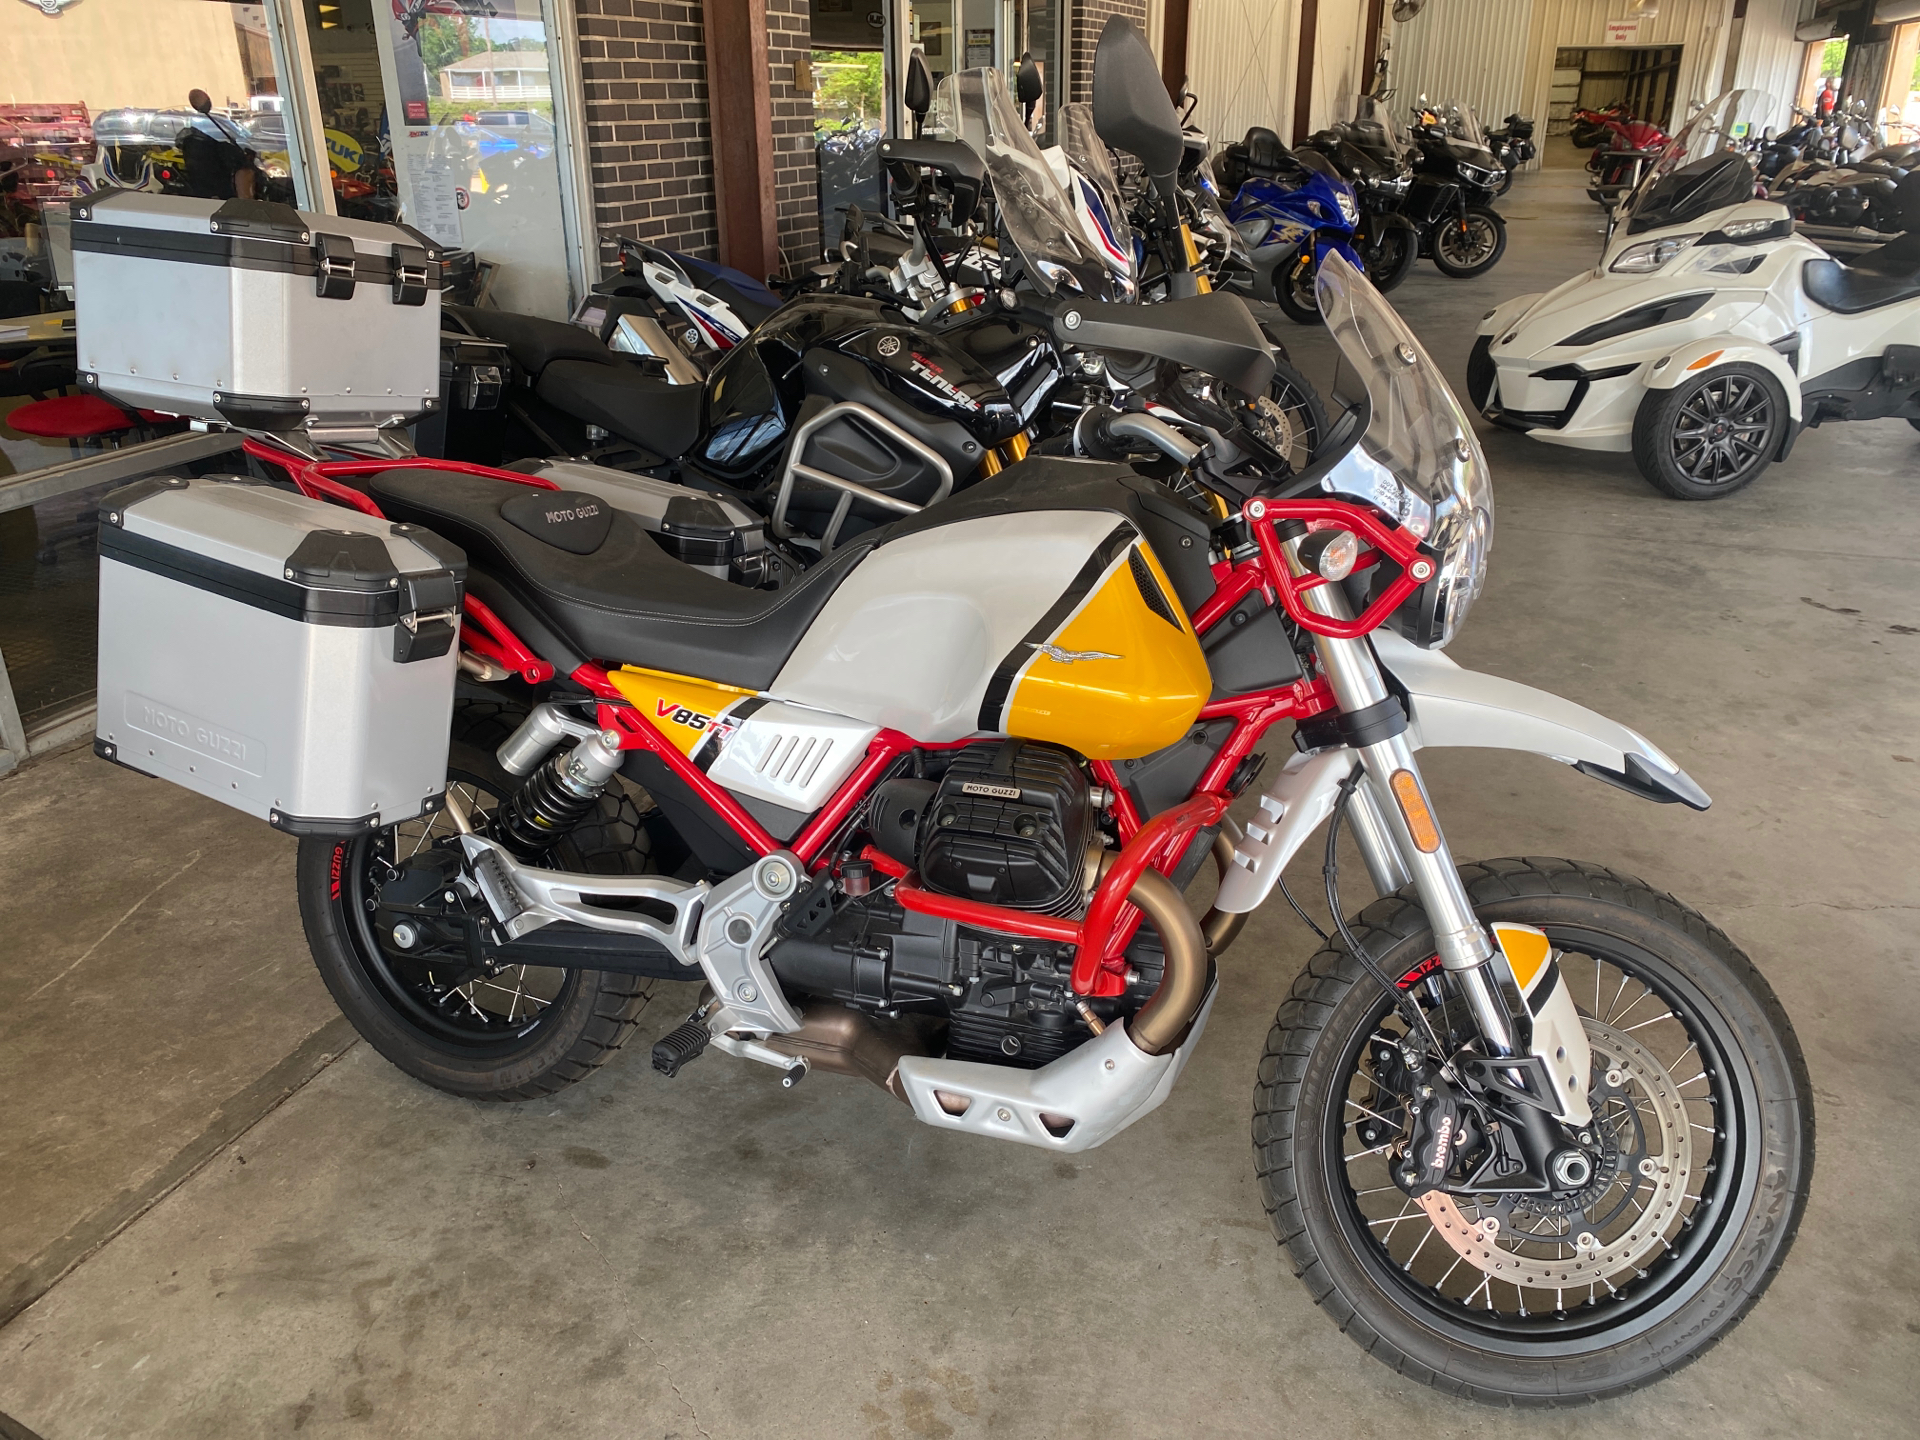 2020 Moto Guzzi V85 TT Adventure in Houston, Texas - Photo 1